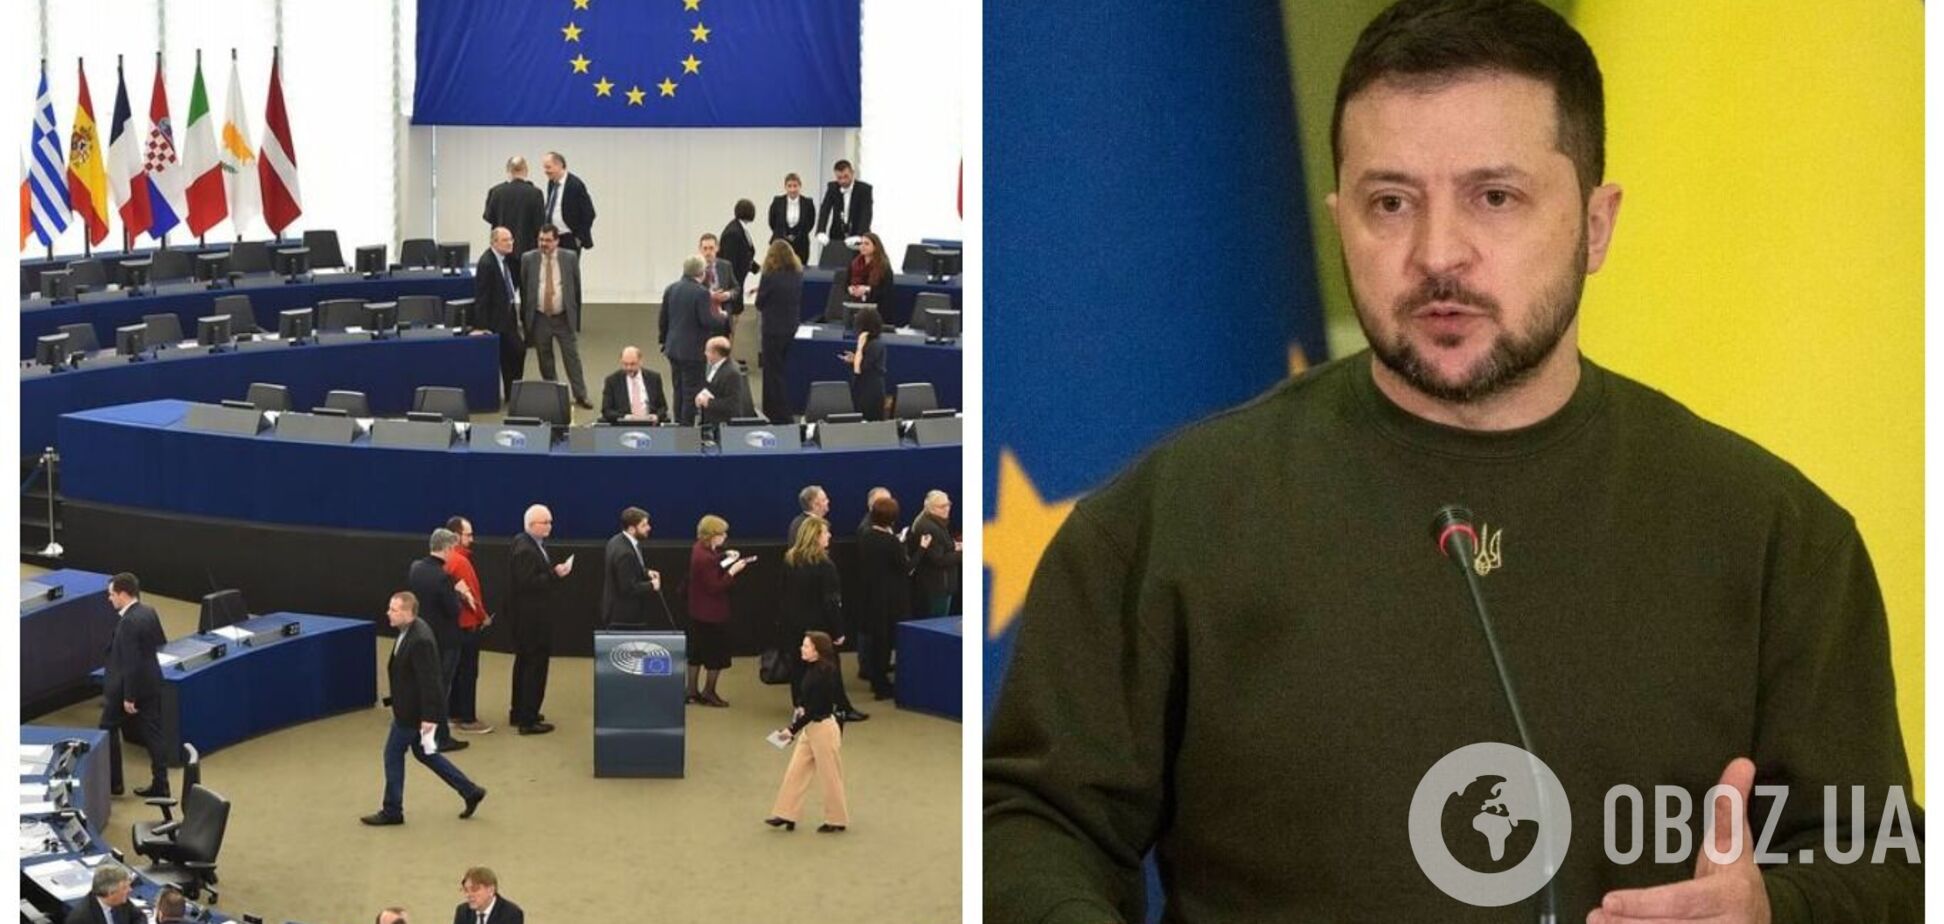 Зеленский начал выступление в Европарламенте, в здании прозвучал гимн Украины. Фото, видео и все подробности